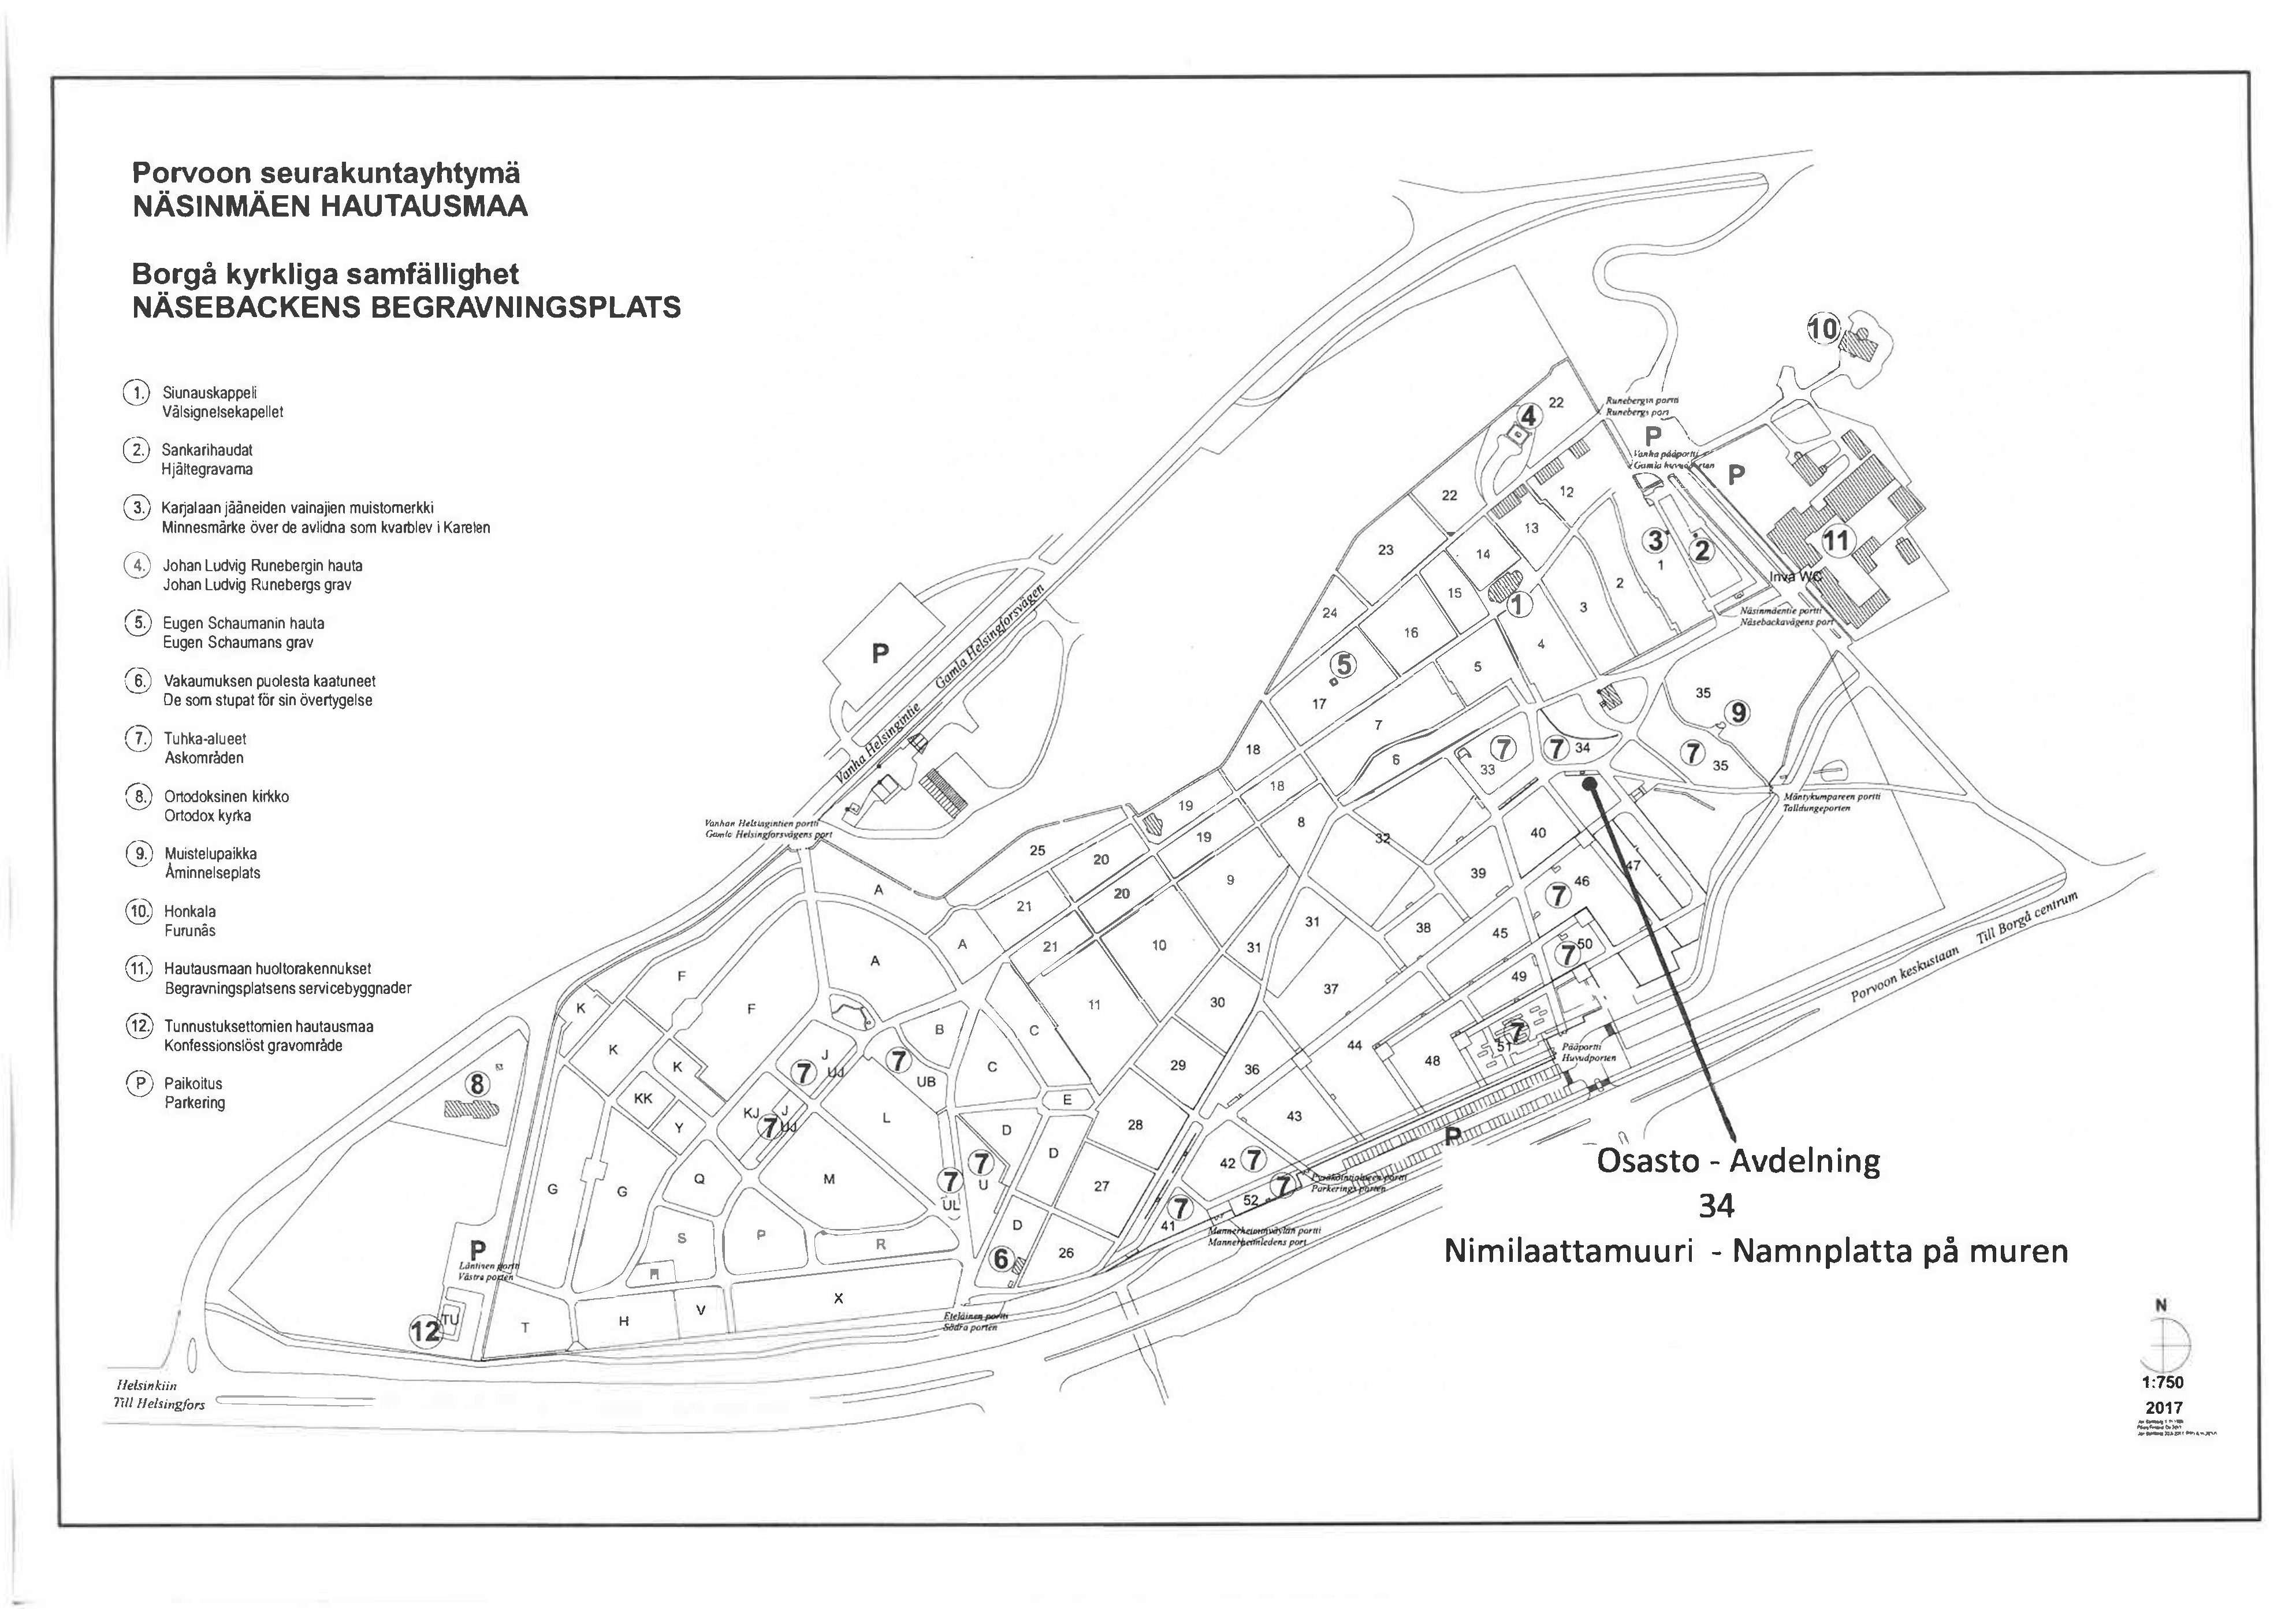 Karta som visar murens plats, den ligger cirka hundra meter sydväst om huvudporten till gravgården vid Näsebackavägen 5.